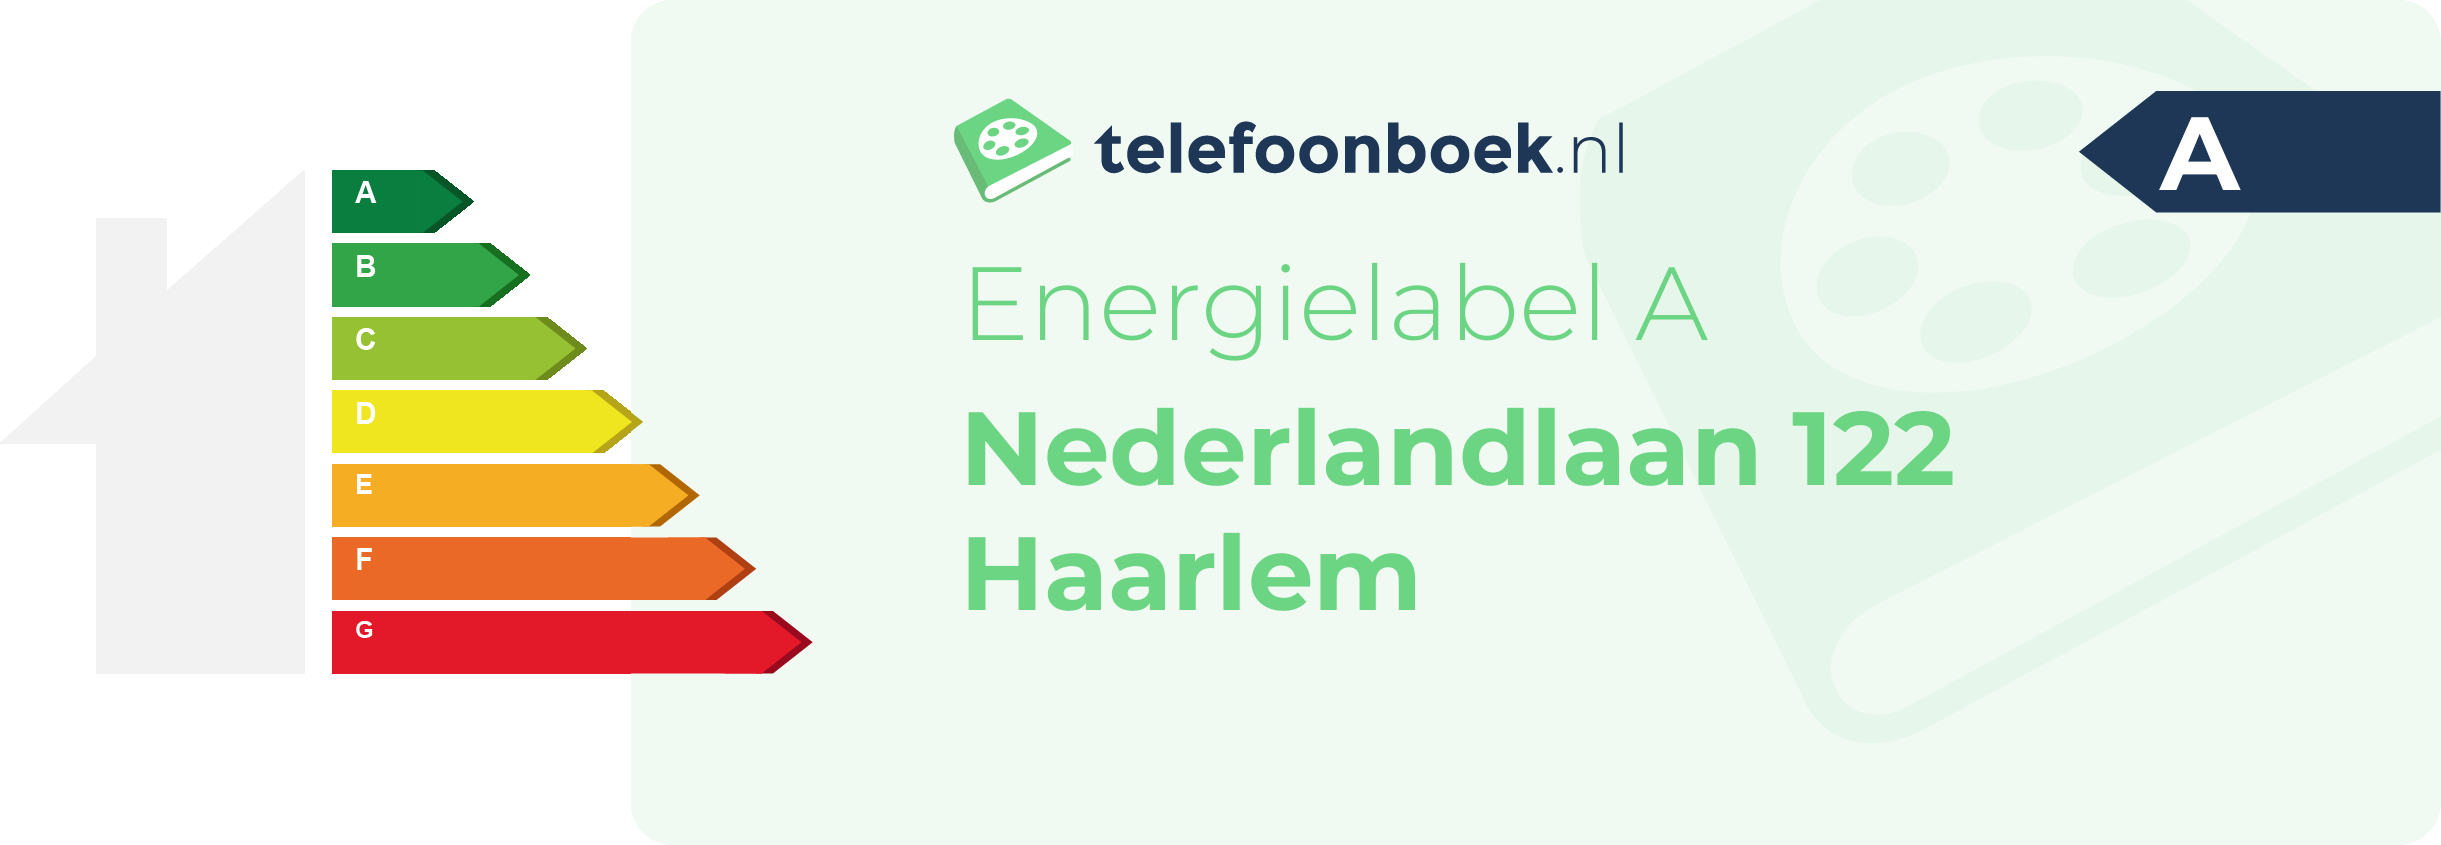 Energielabel Nederlandlaan 122 Haarlem